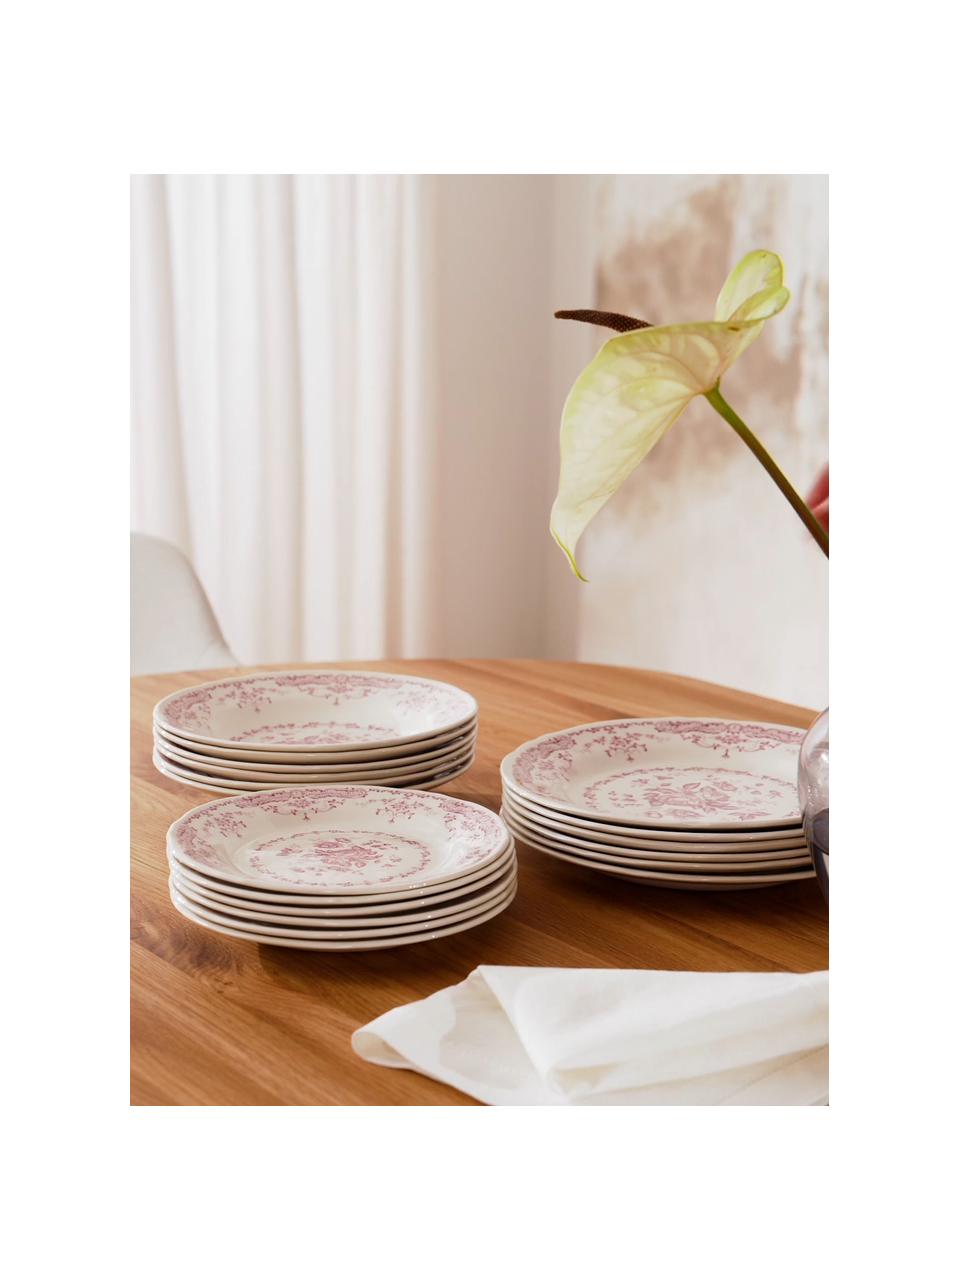 Set 18 piatti in porcellana con motivo floreale per 6 persone Rose, Ceramica, Bianco, rosa, Set in varie misure